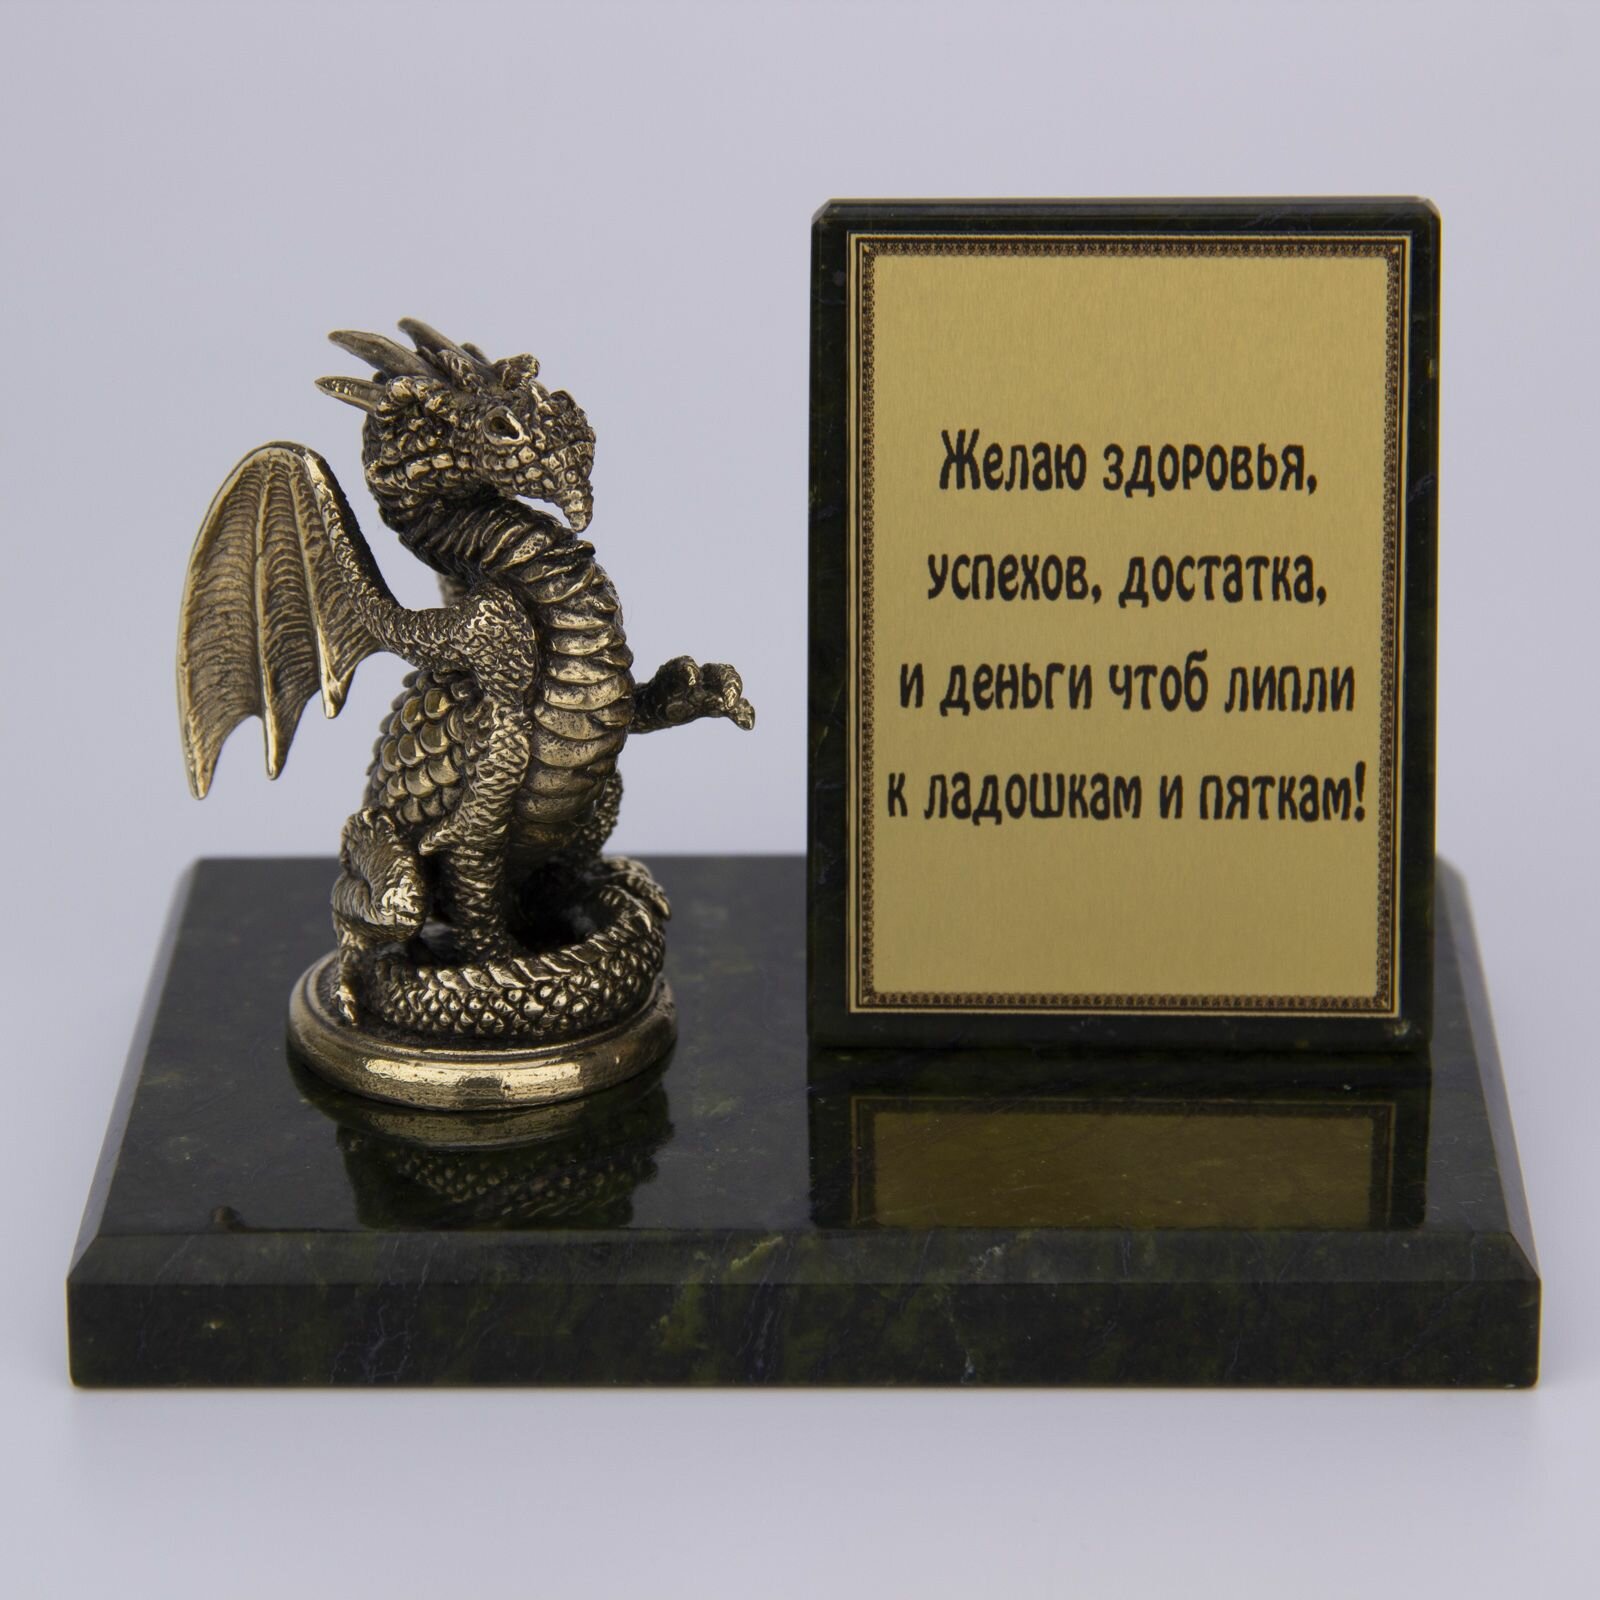 Фигурка на камне "Пожелания от дракона". Сувенир на подарок.